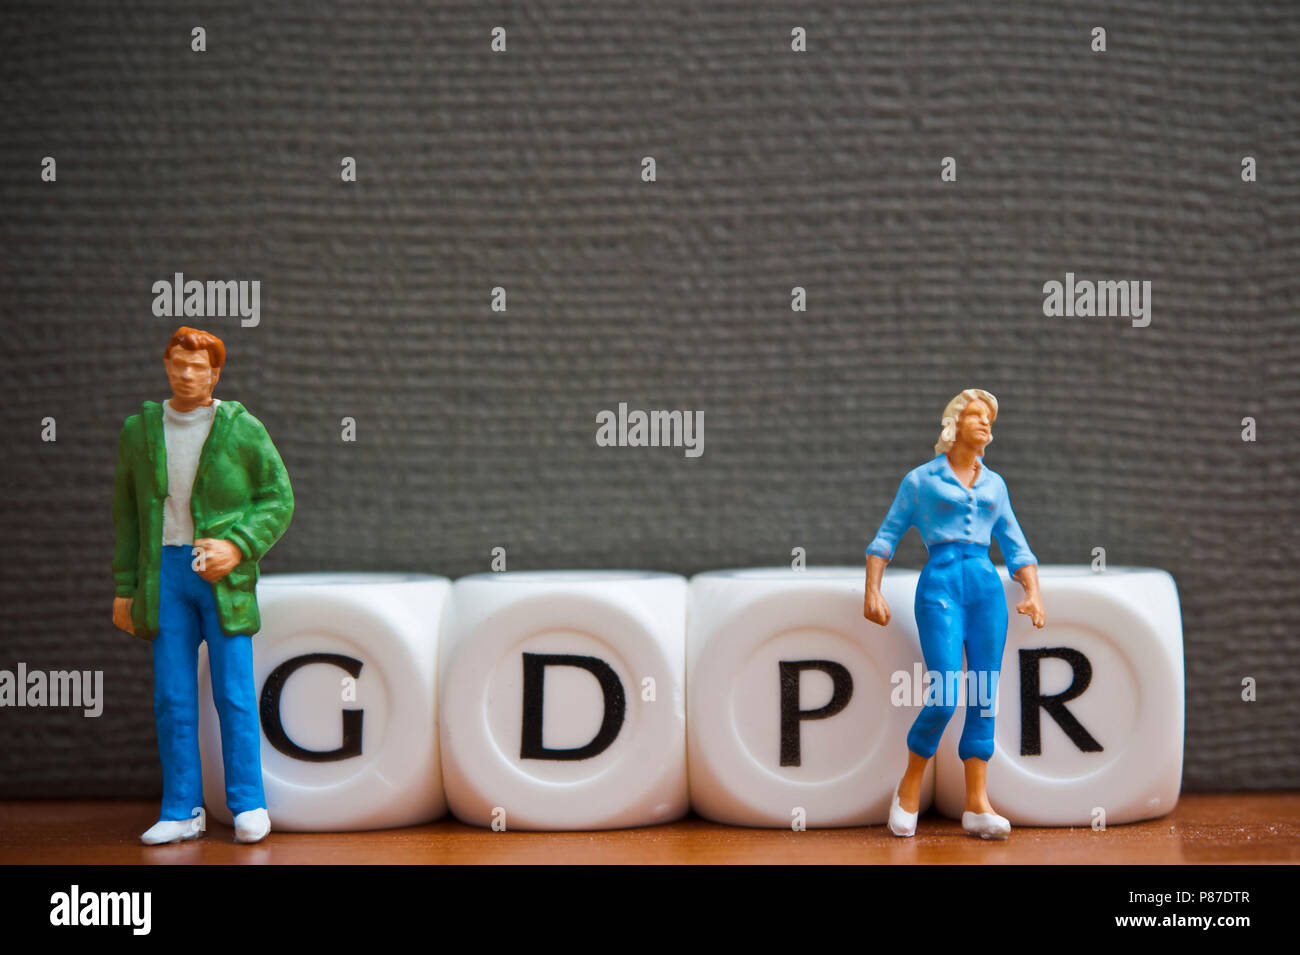 Miniatur Figuren und Würfel Rechtschreibung das Wort BIPR - Allgemeine Datenschutzverordnung Stockfoto